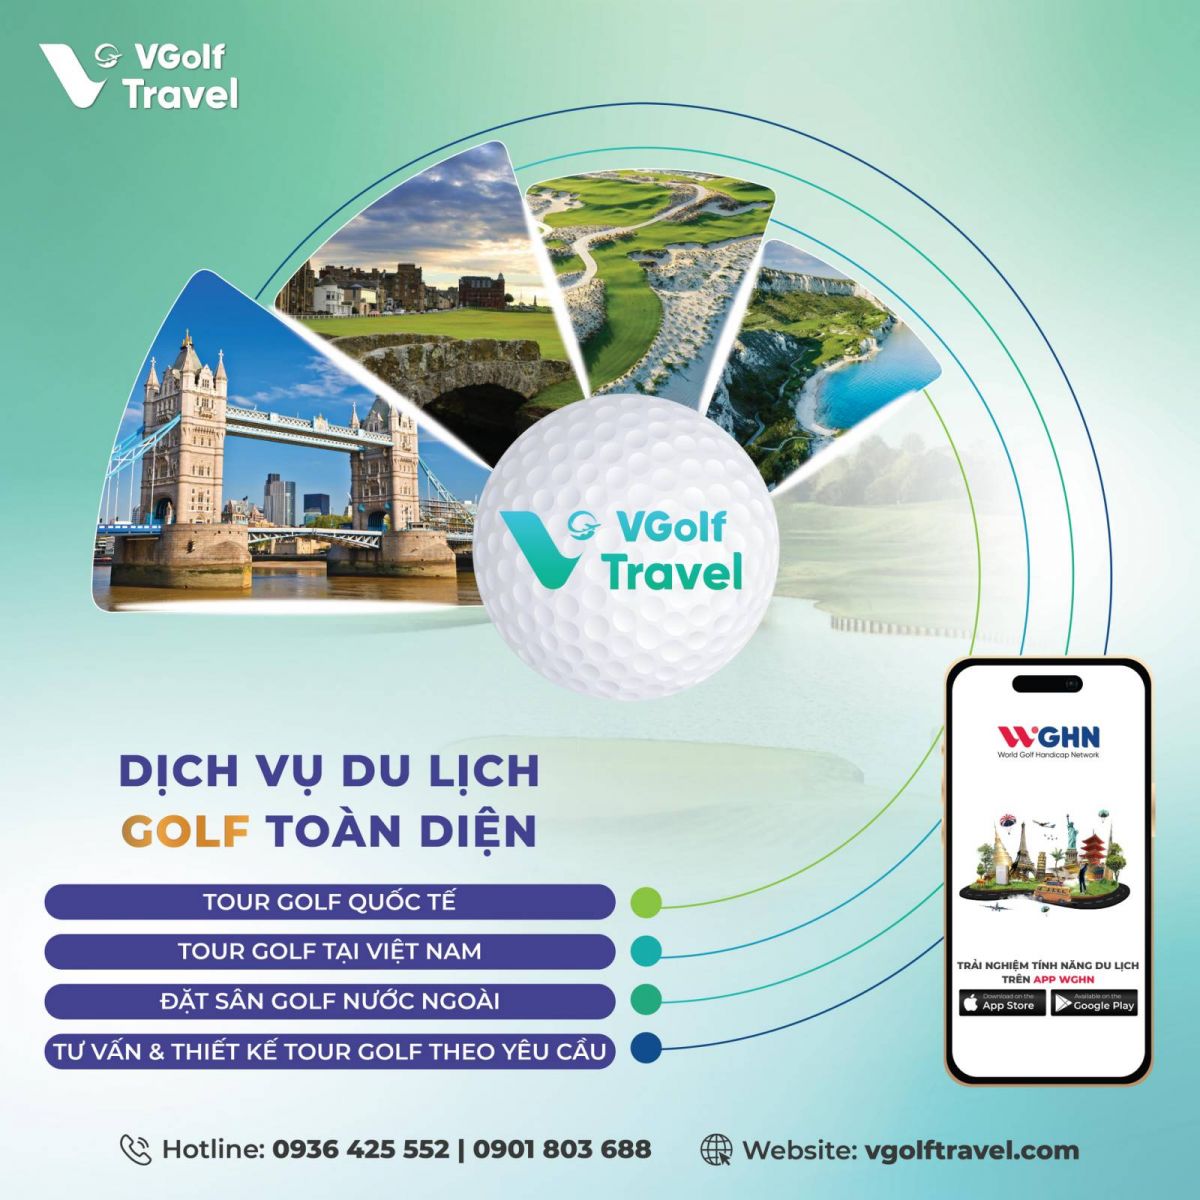 VGolf Travel cung cấp dịch vụ golf toàn diện